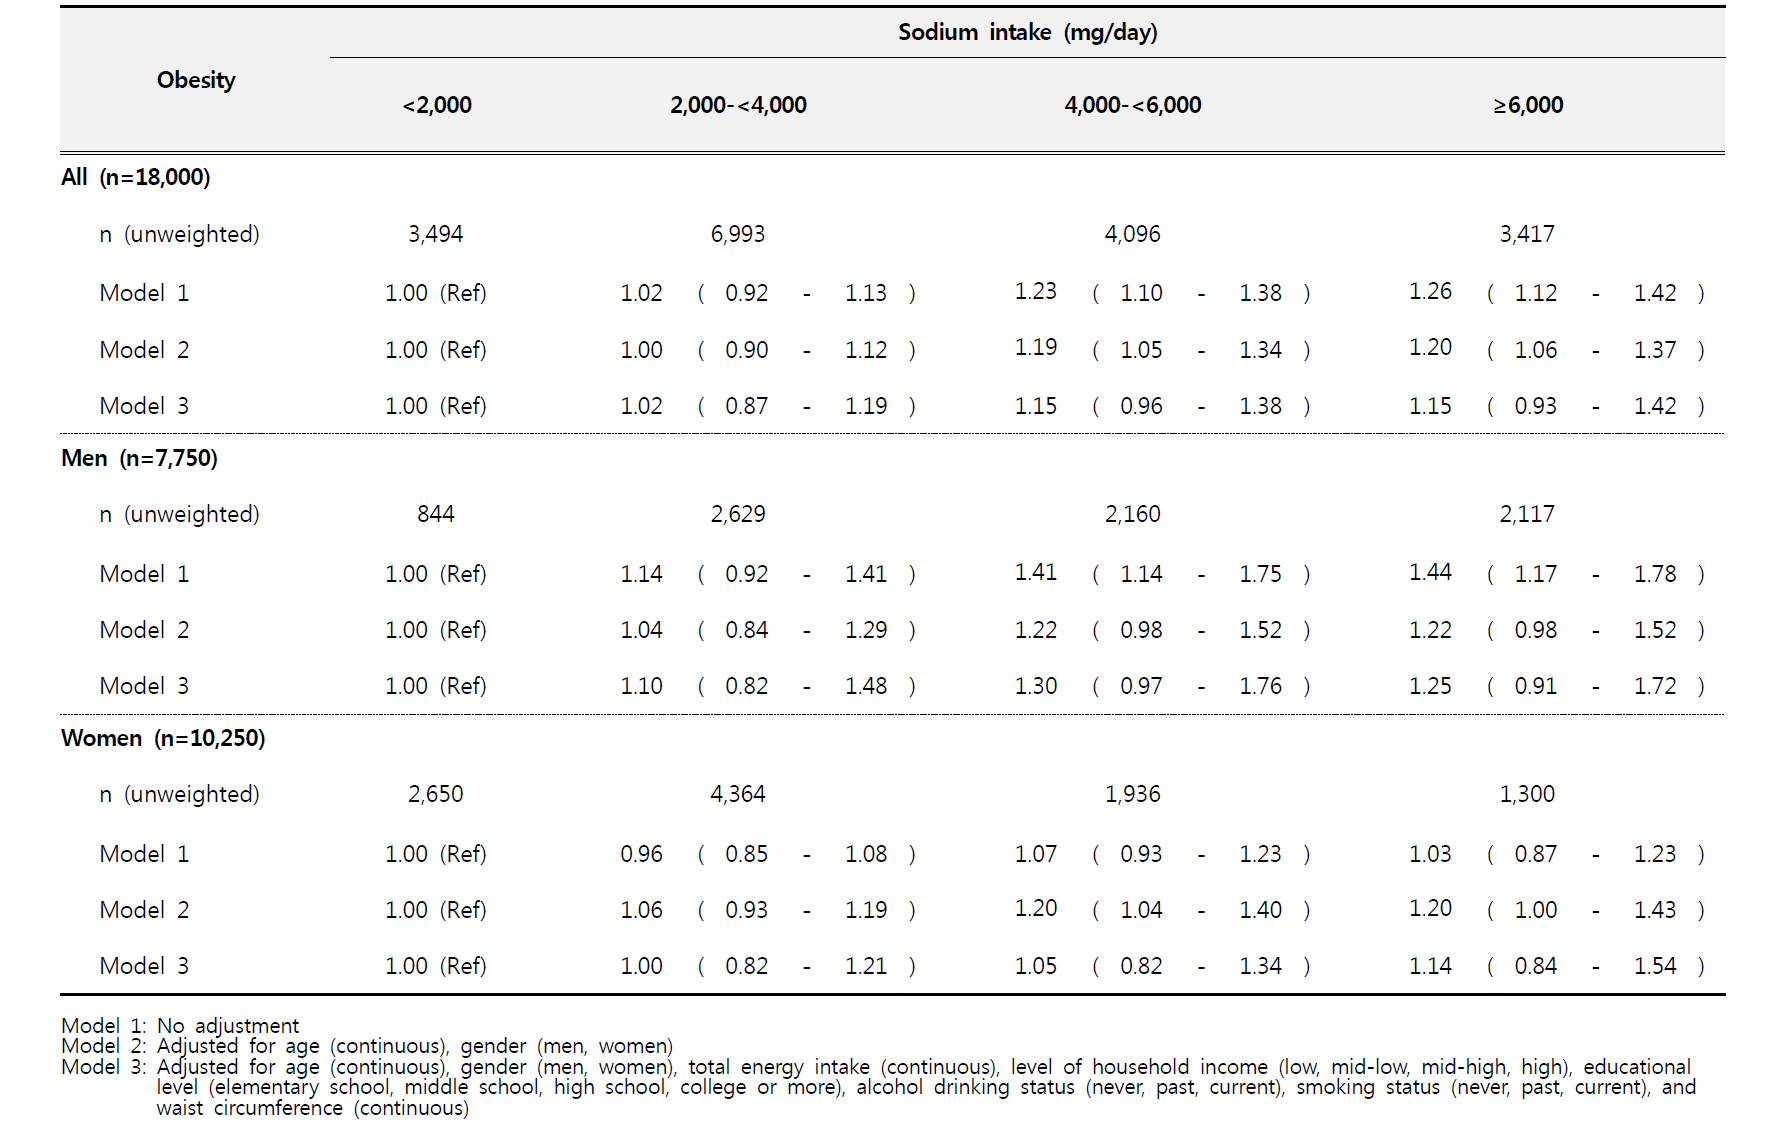 [국민건강영양조사] 나트륨 섭취량과 비만 간의 상관성 분석: 오즈비(Odds ratio, ORs)